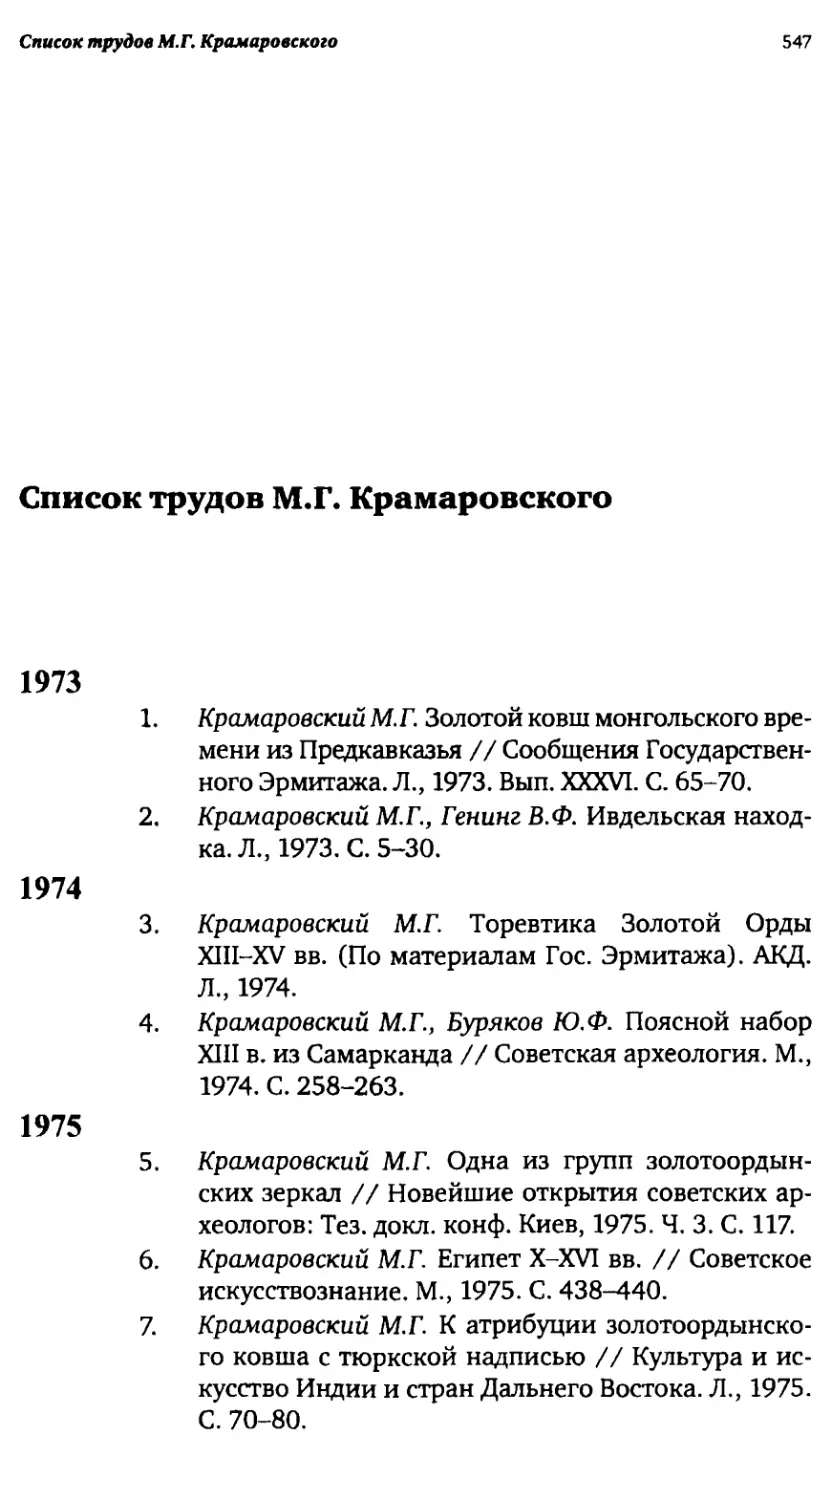 Список трудов М.Г. Крамаровского